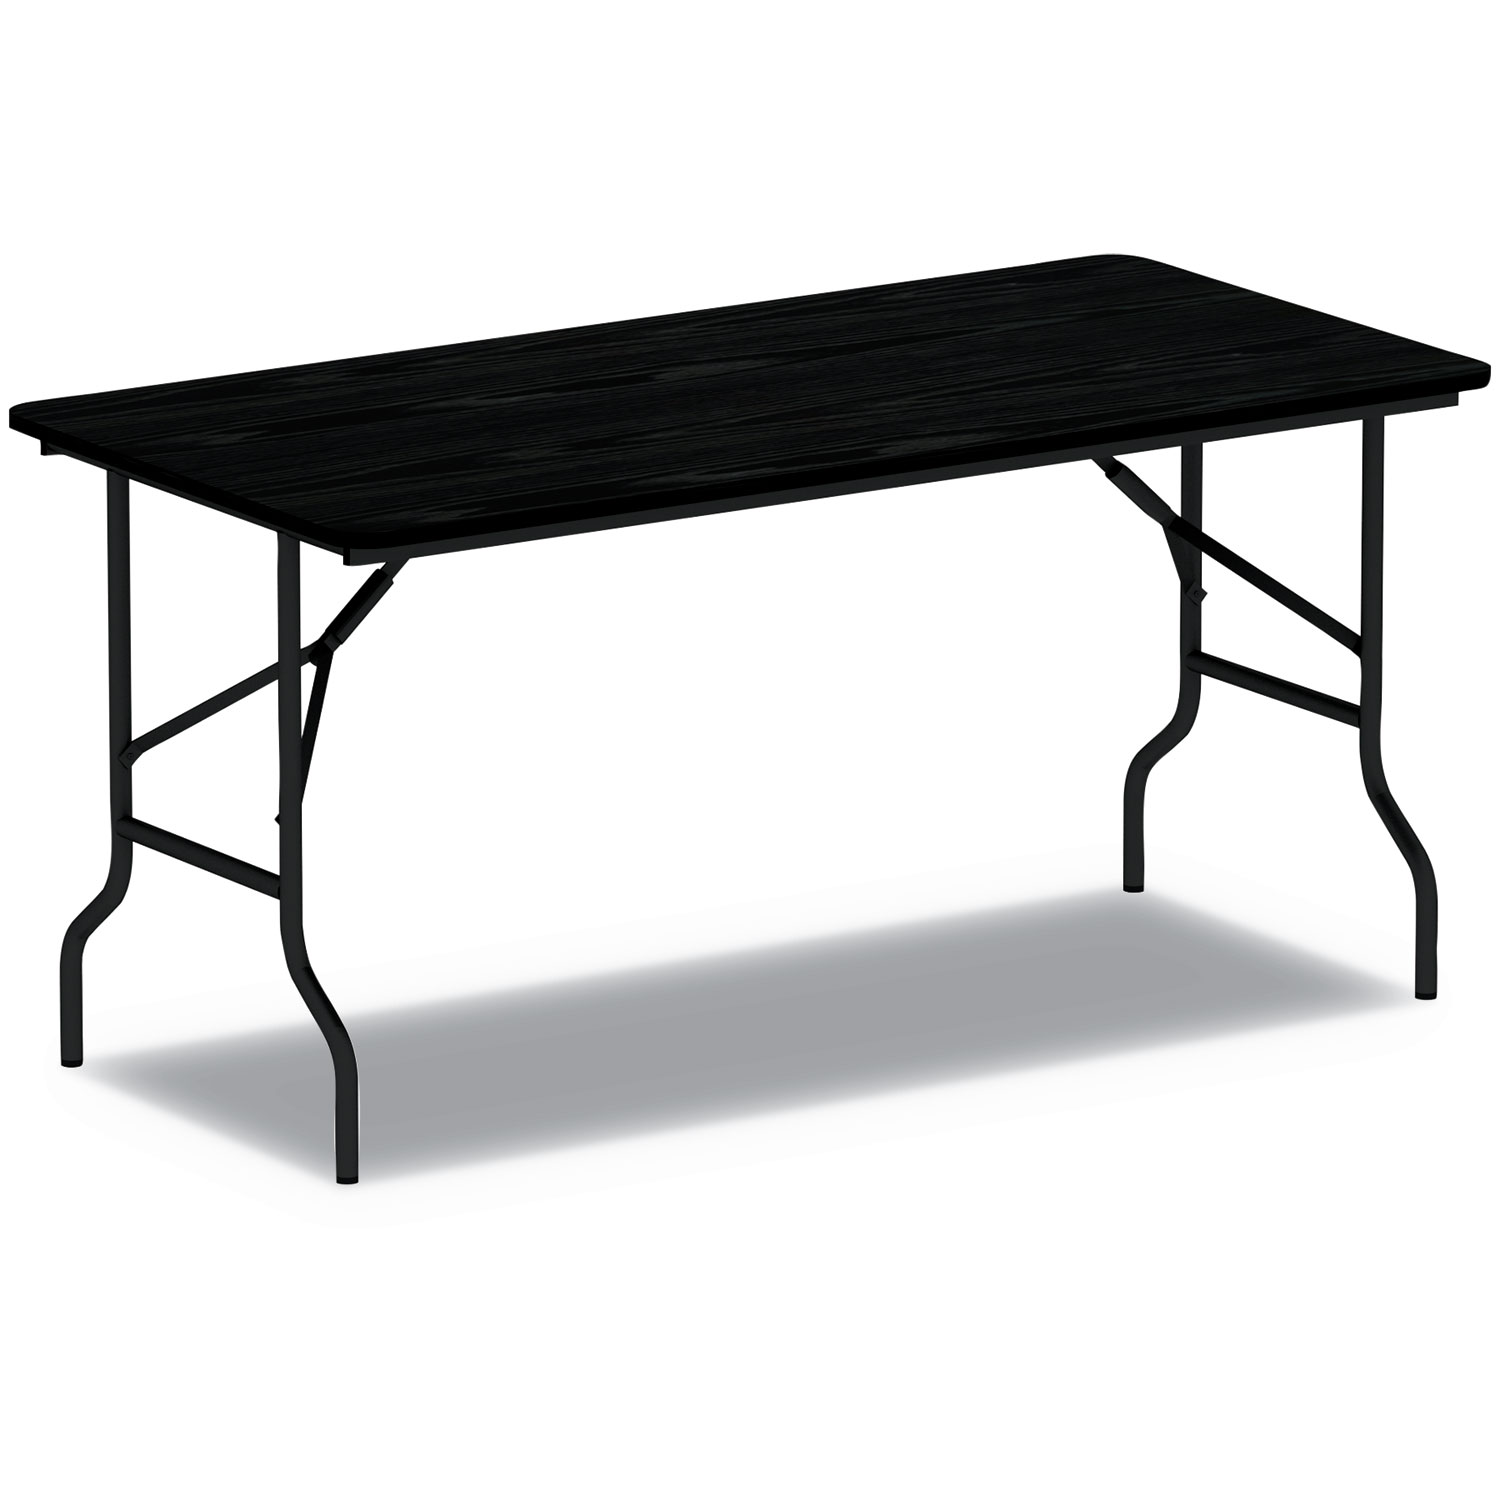  Alera ALEFT727218BK Wood Folding Table, 71 7/8w x 17 3/4d x 29 1/8h, Black (ALEFT727218BK) 